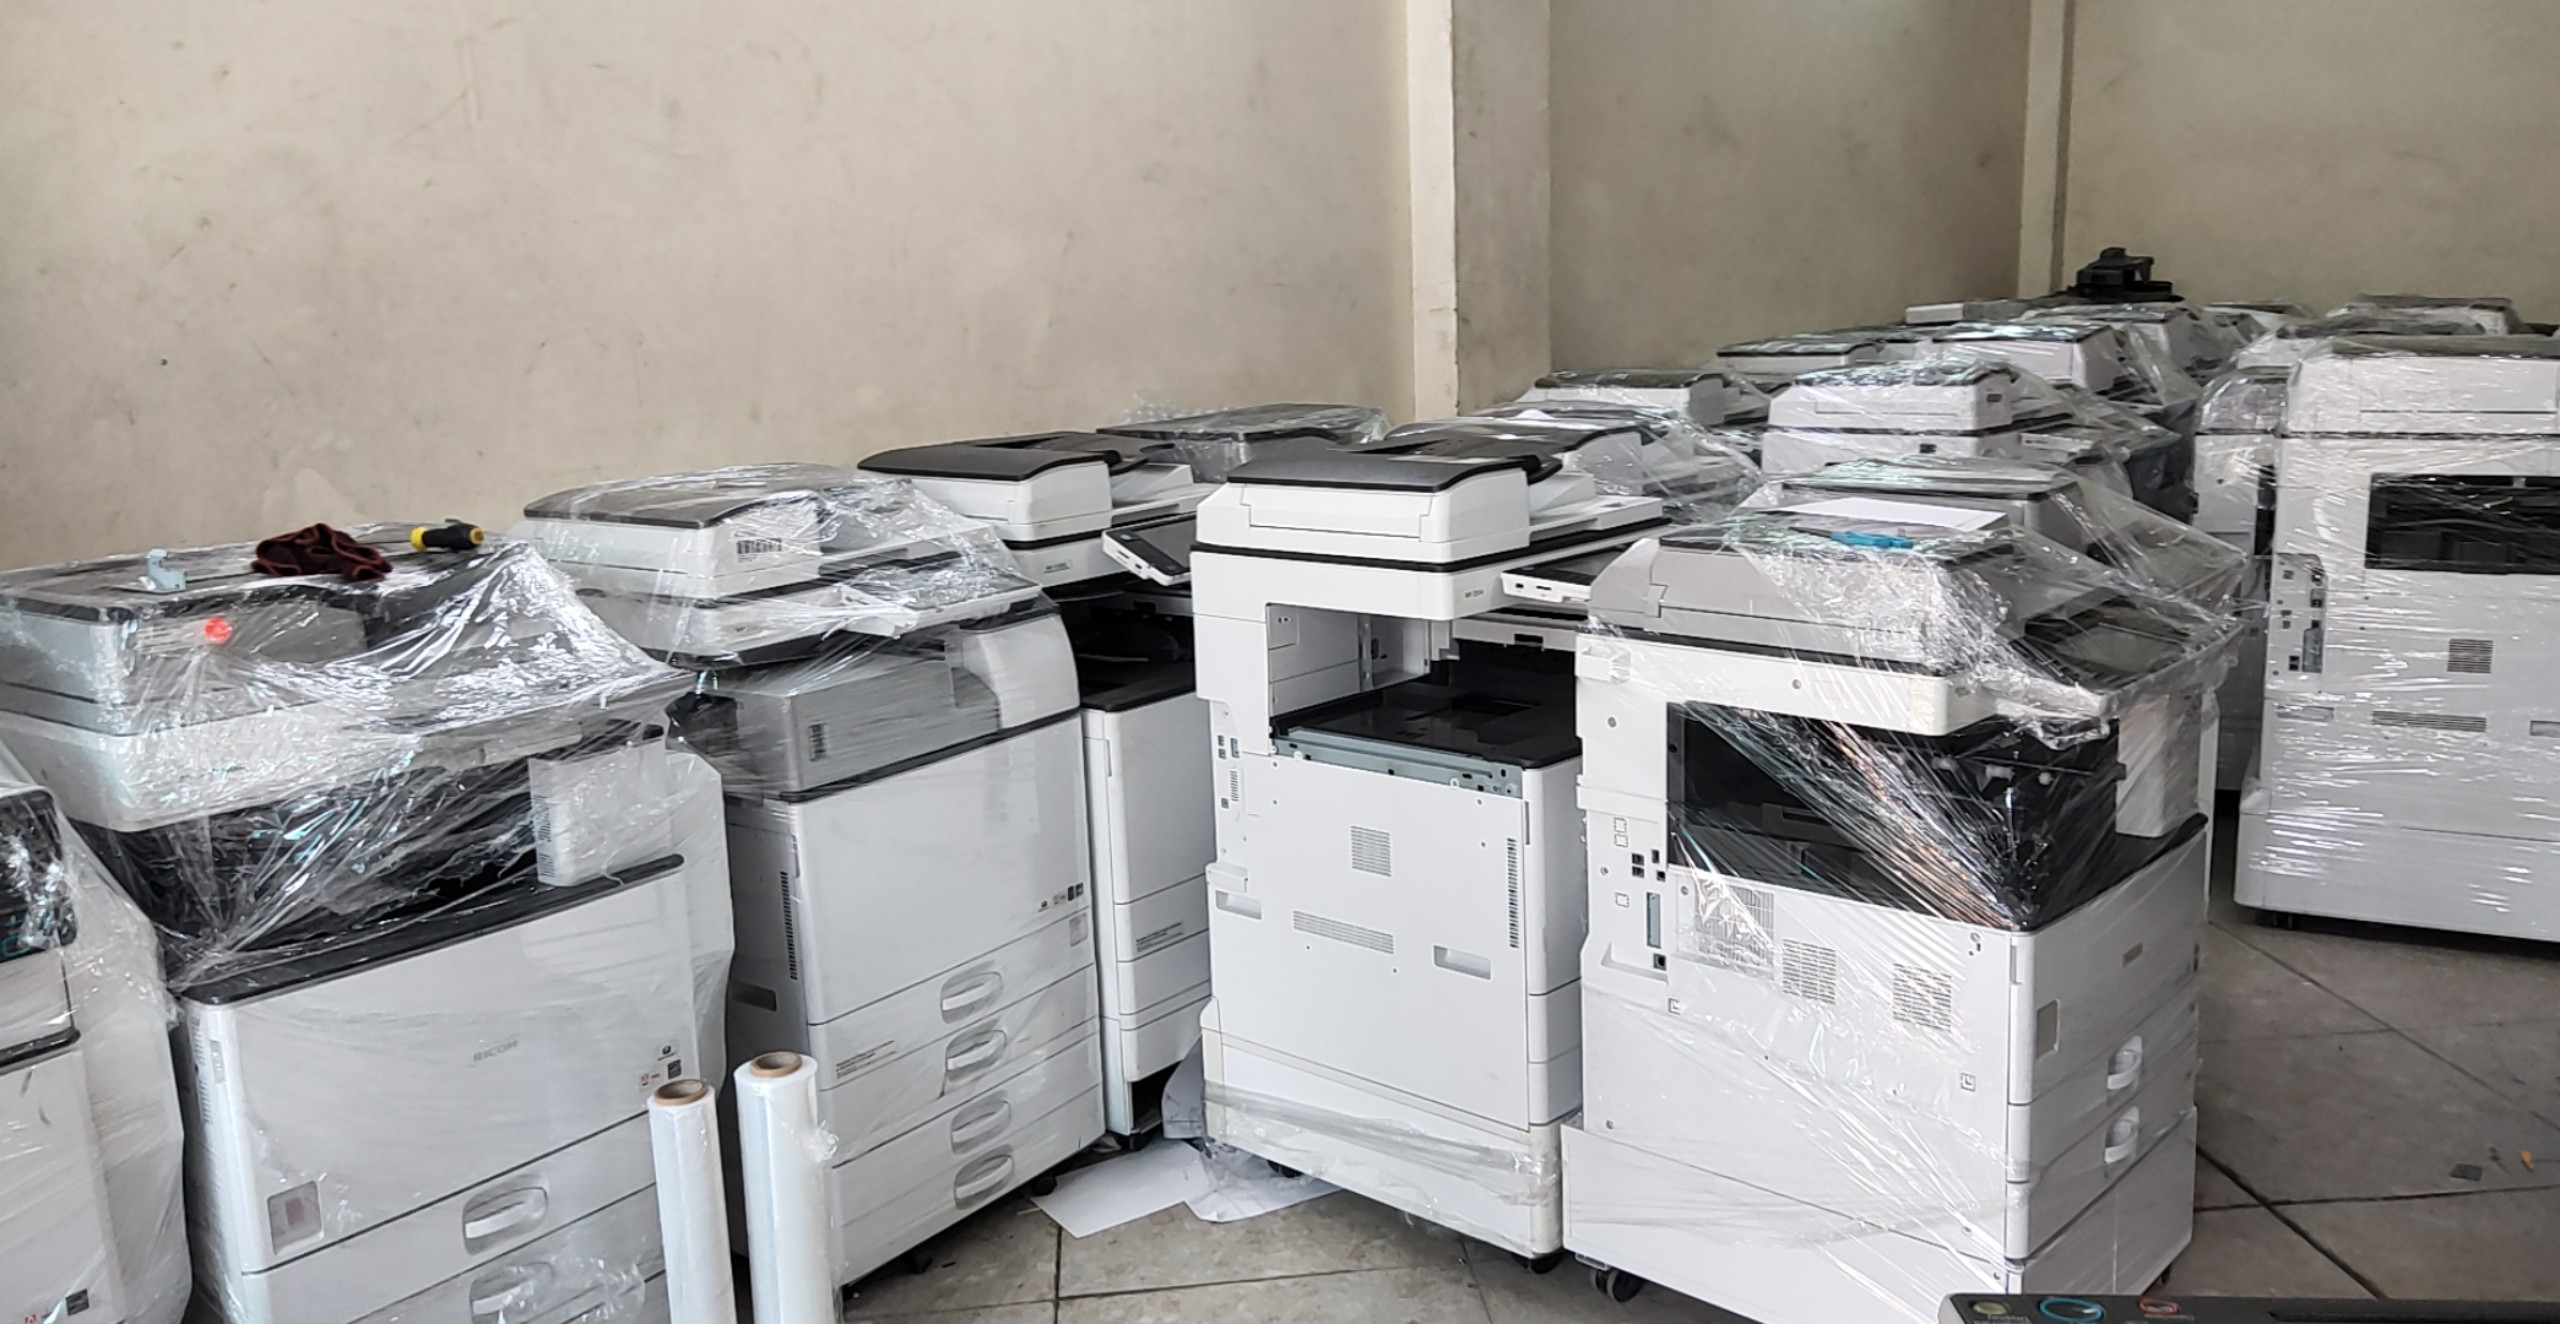 Báo giá cho thuê máy photocopy tại Bắc Kạn, Cao Bằng - thanh lý máy giá rẻ